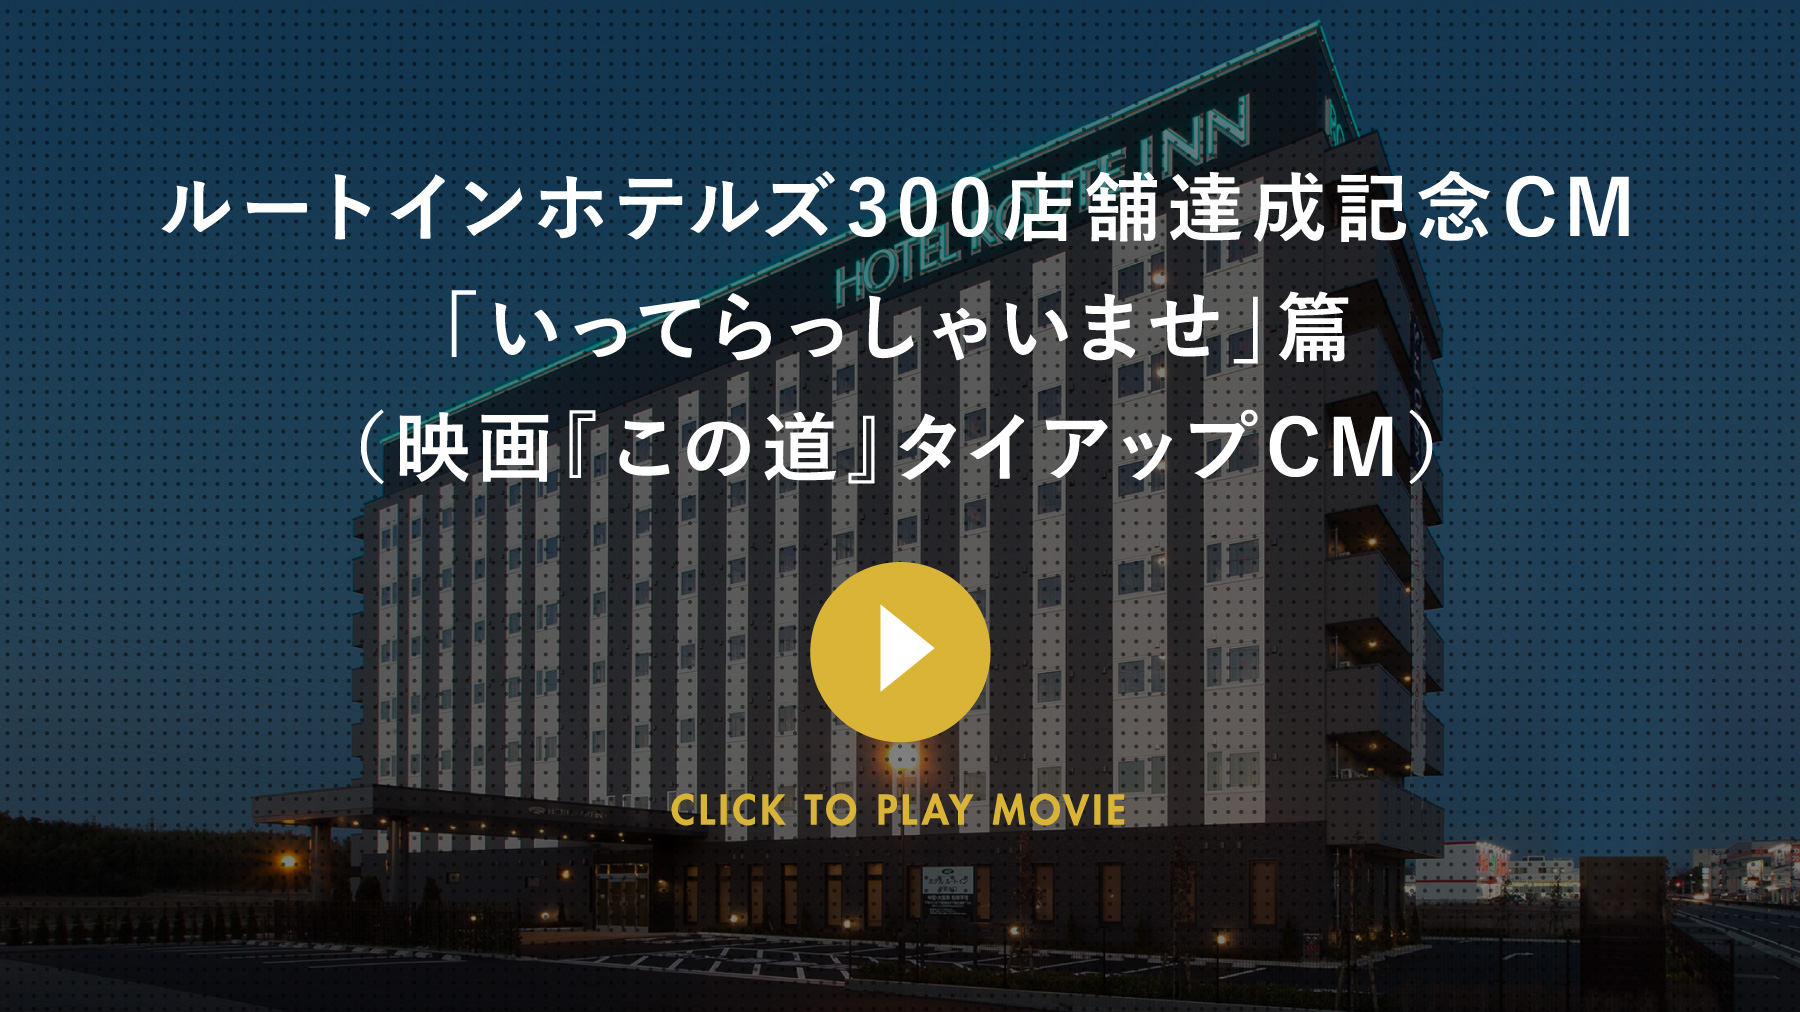 ルートインホテルズ300店舗達成記念CM 「いってらっしゃいませ」篇（映画『この道』タイアップCM） CLICK TO PLAY MOVIE